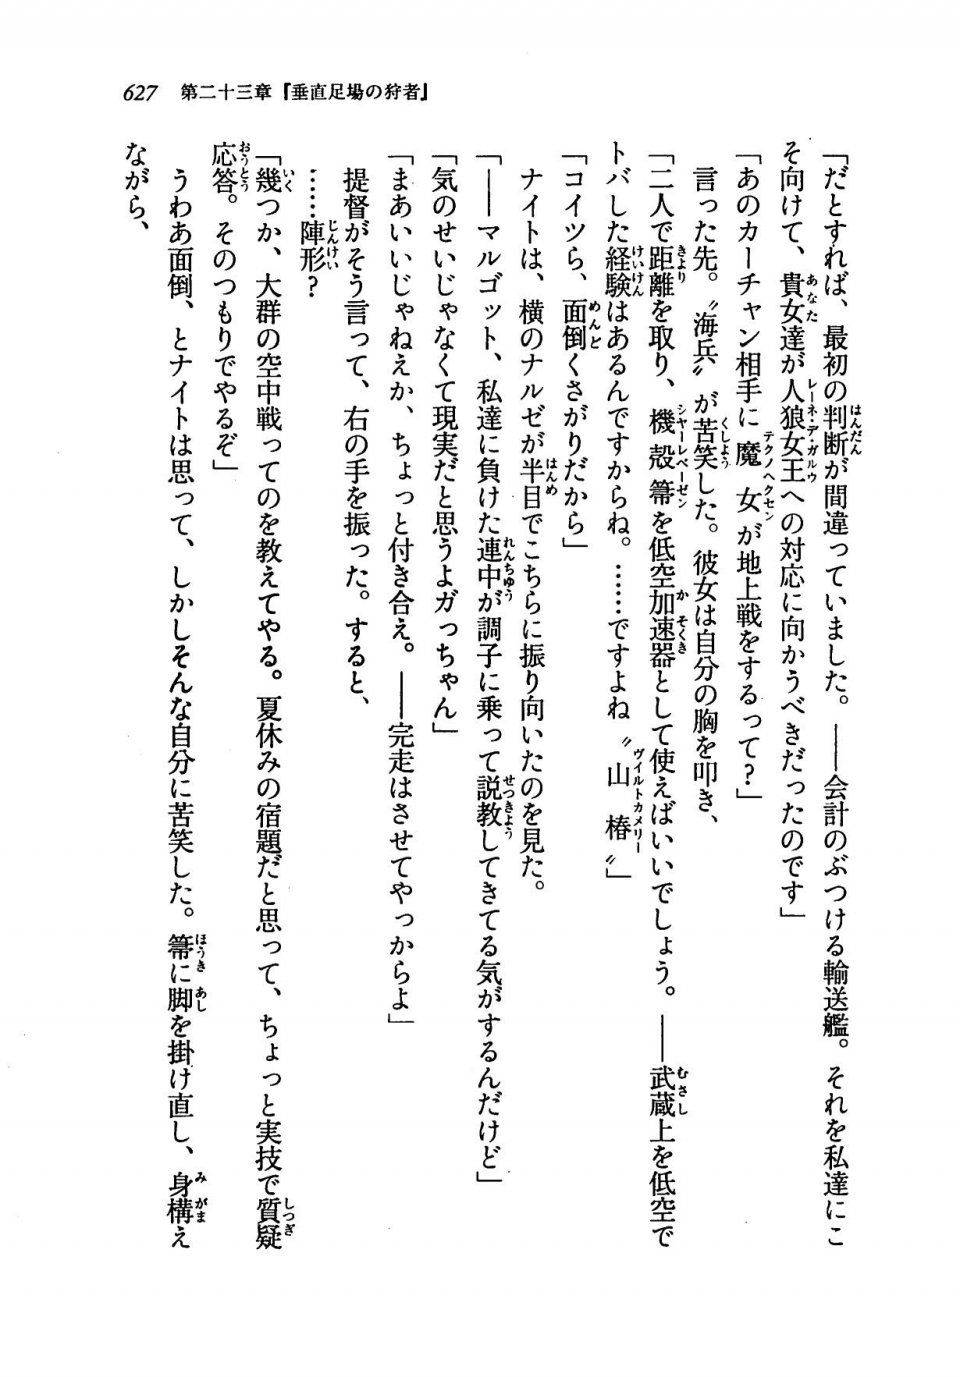 Kyoukai Senjou no Horizon LN Vol 19(8A) - Photo #627